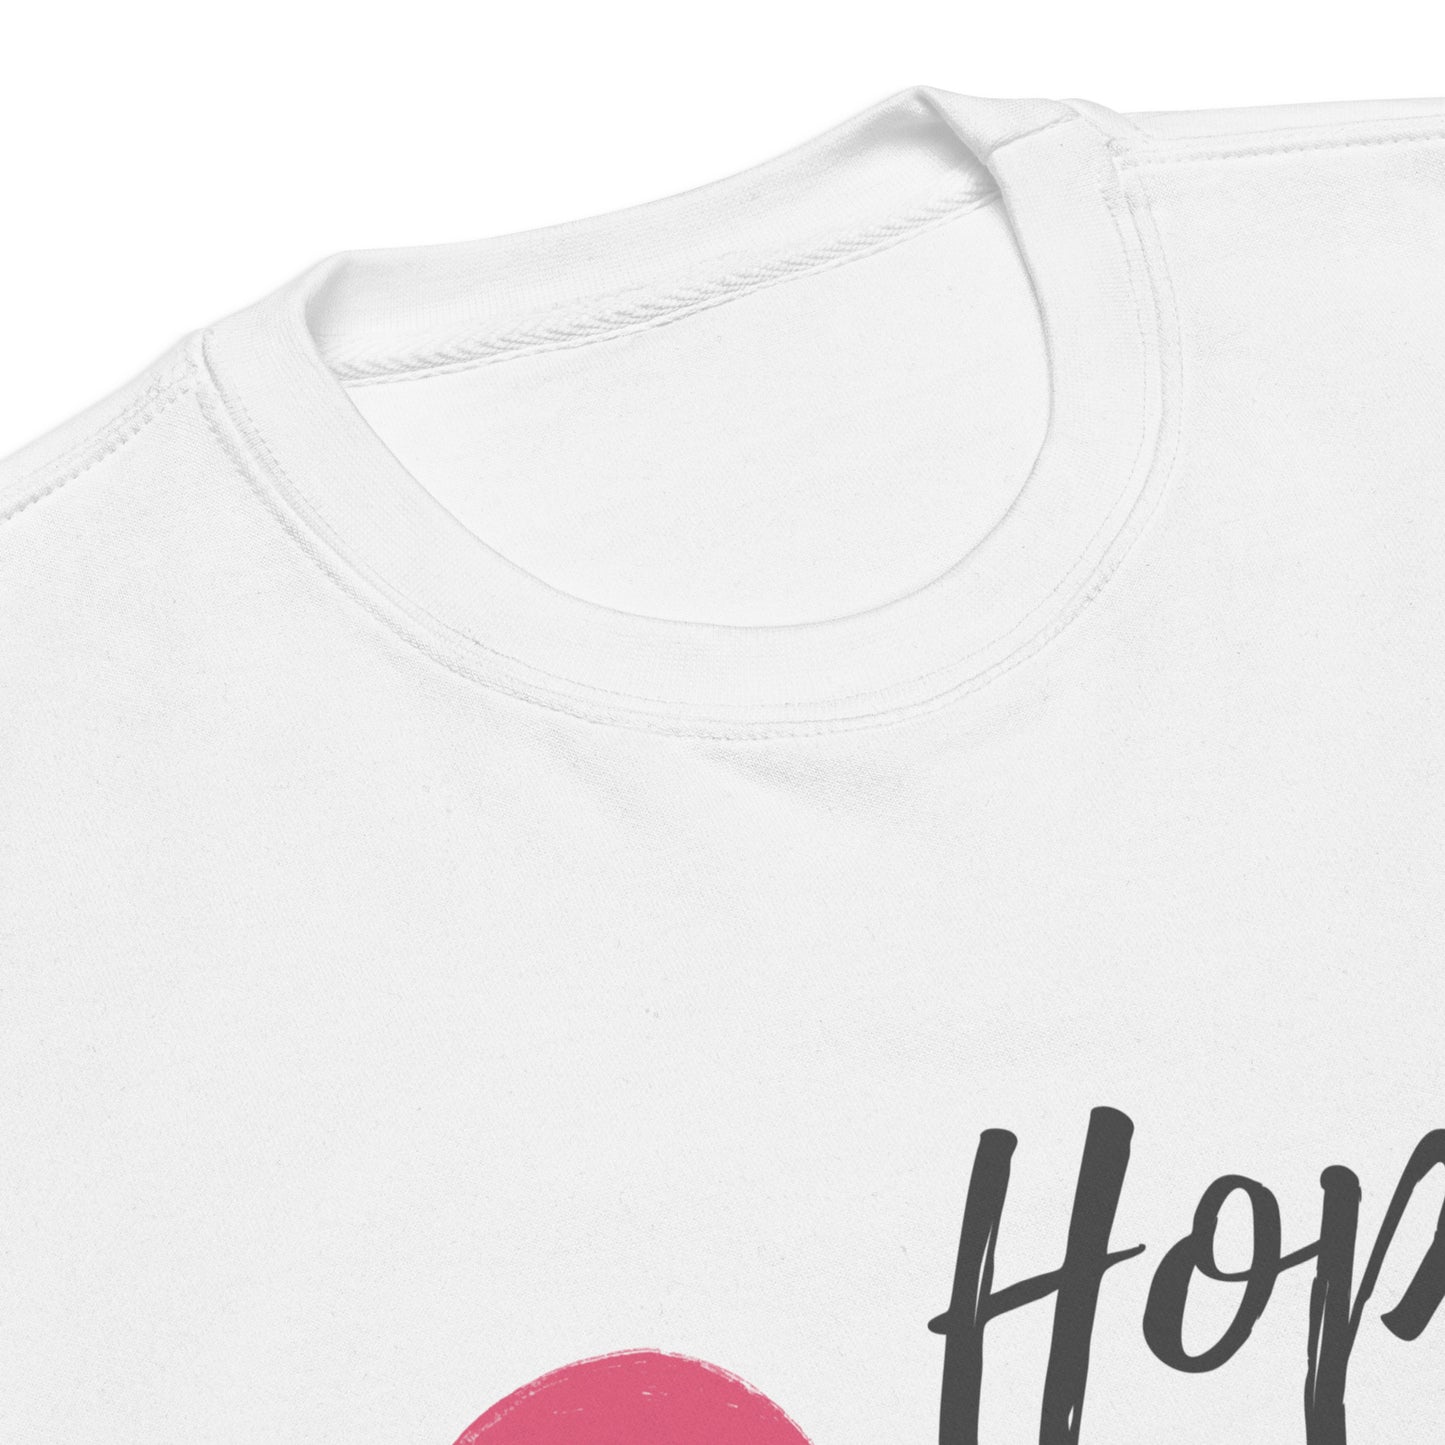 Adult GU 'Hope Heal Help' Premium Sweatshirt